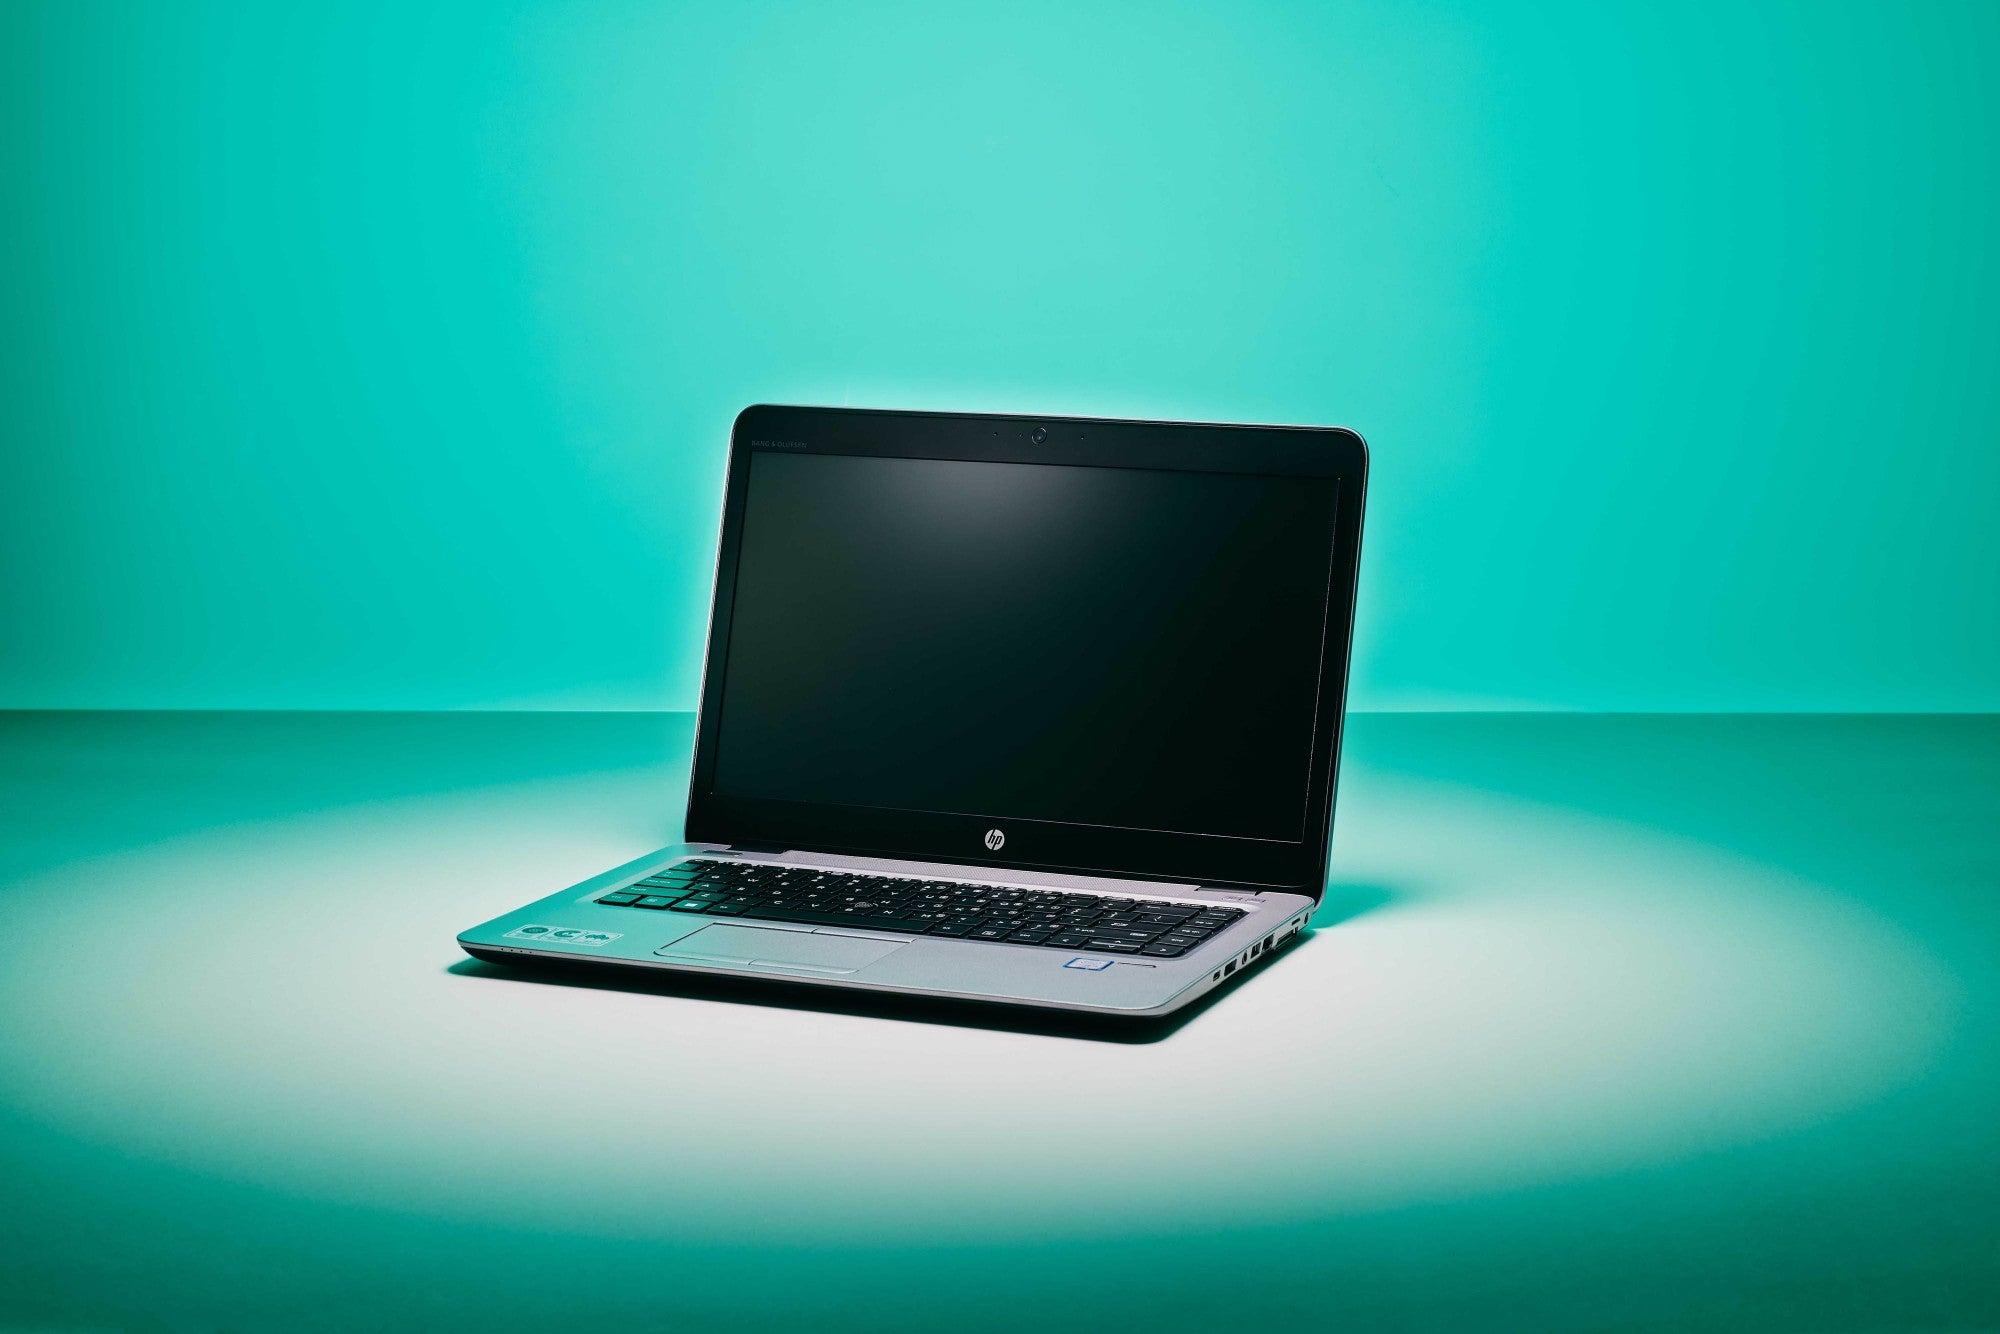 HP EliteBook 840 G5 - i5-7200U 